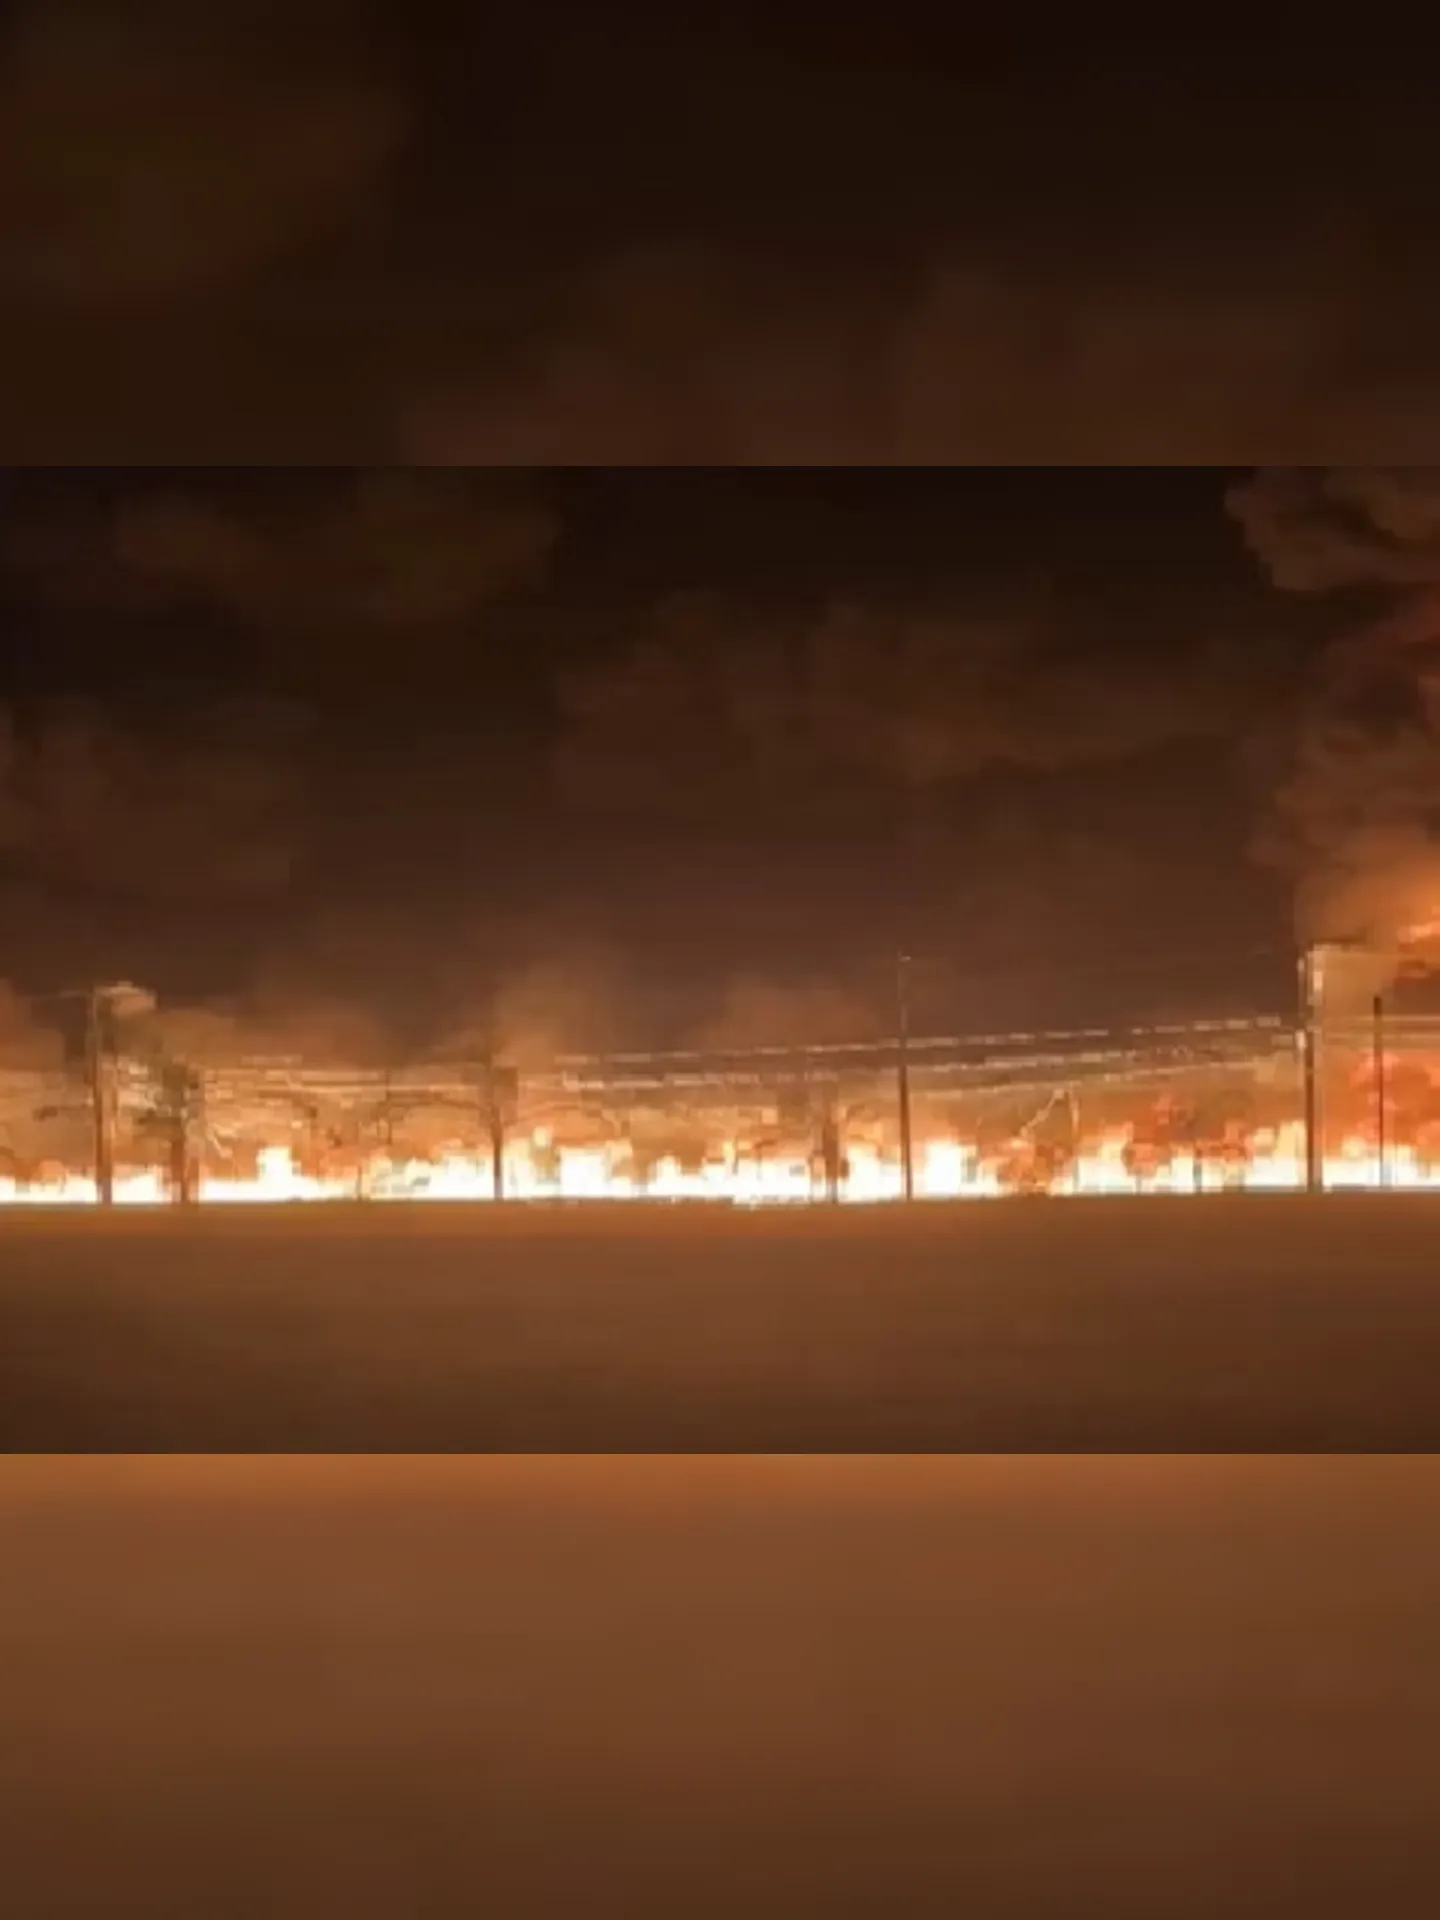 O combustível vazado foi consumido pelas chamas, sem riscos ambientais